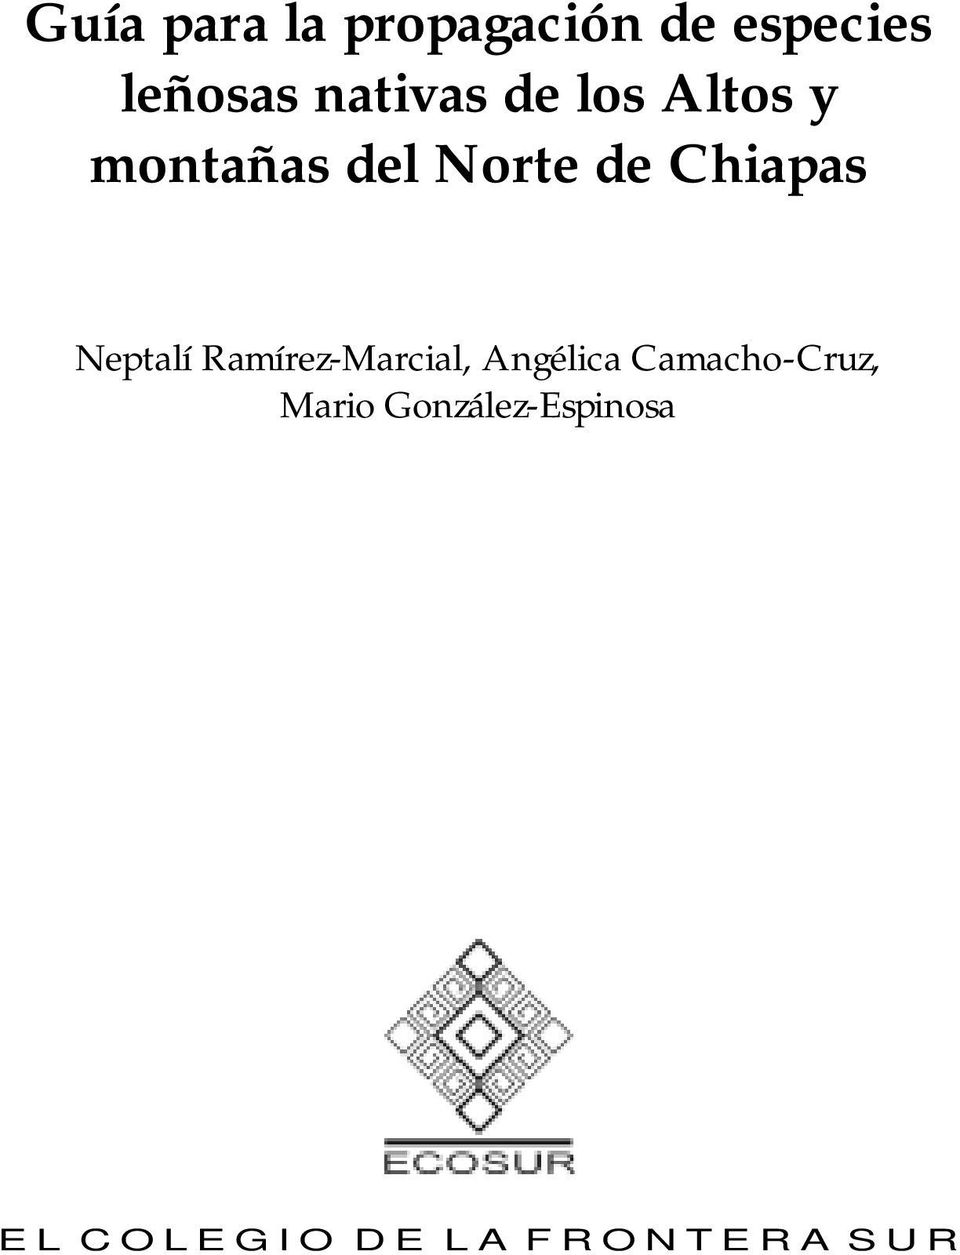 Chiapas Neptalí Ramírez-Marcial, Angélica